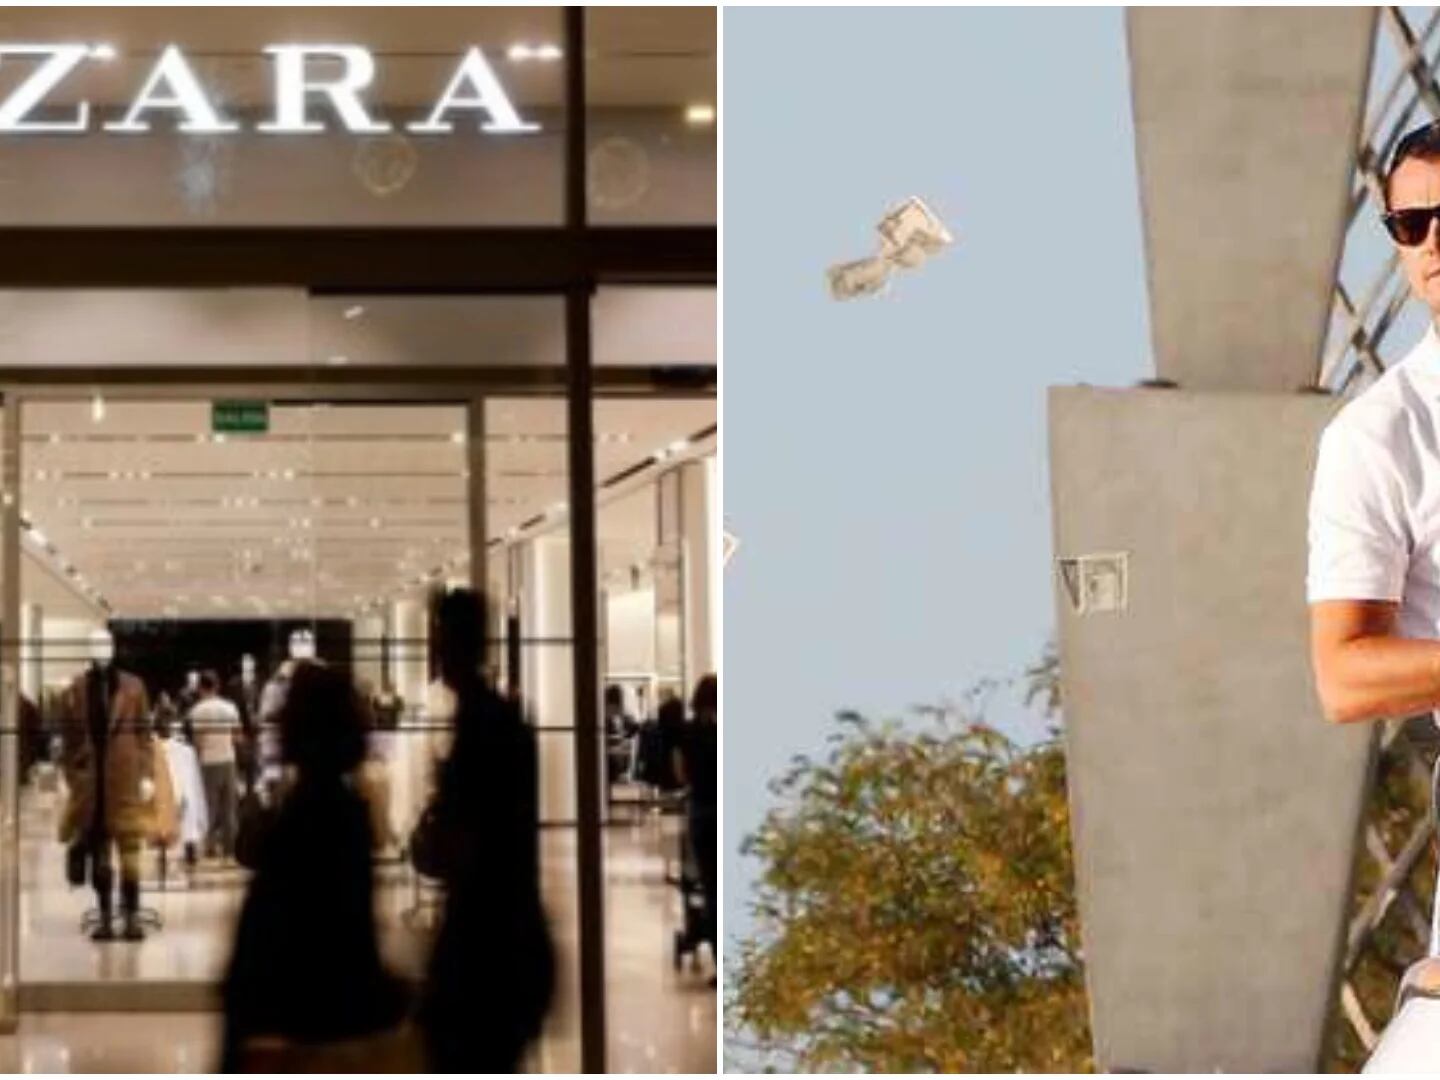 9 cosas sobre Zara que no sabías, revelados por una experta en la marca